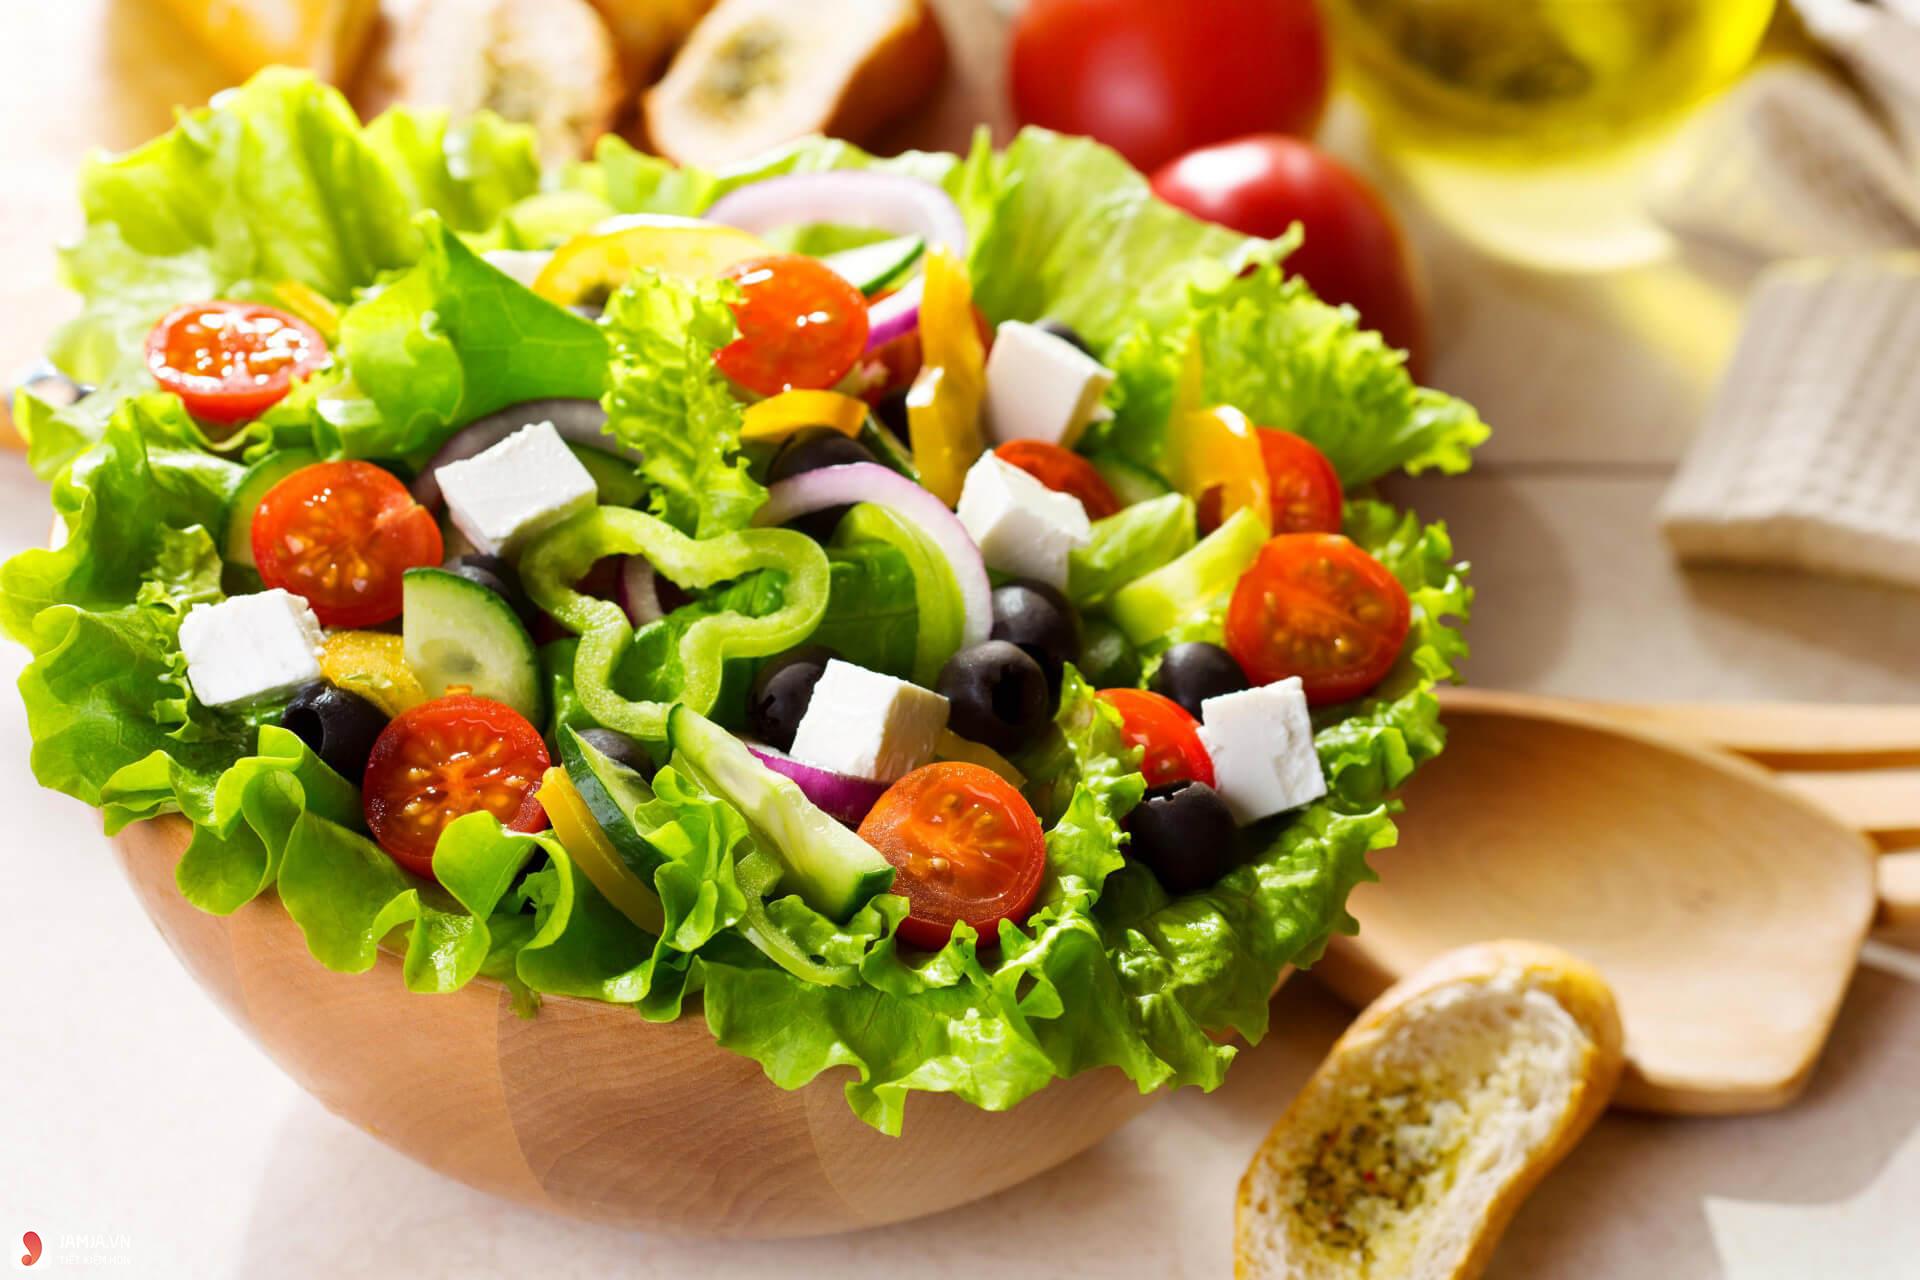  Sốt chanh leo trộn salad ngon tuyệt để thưởng thức trong mùa hè